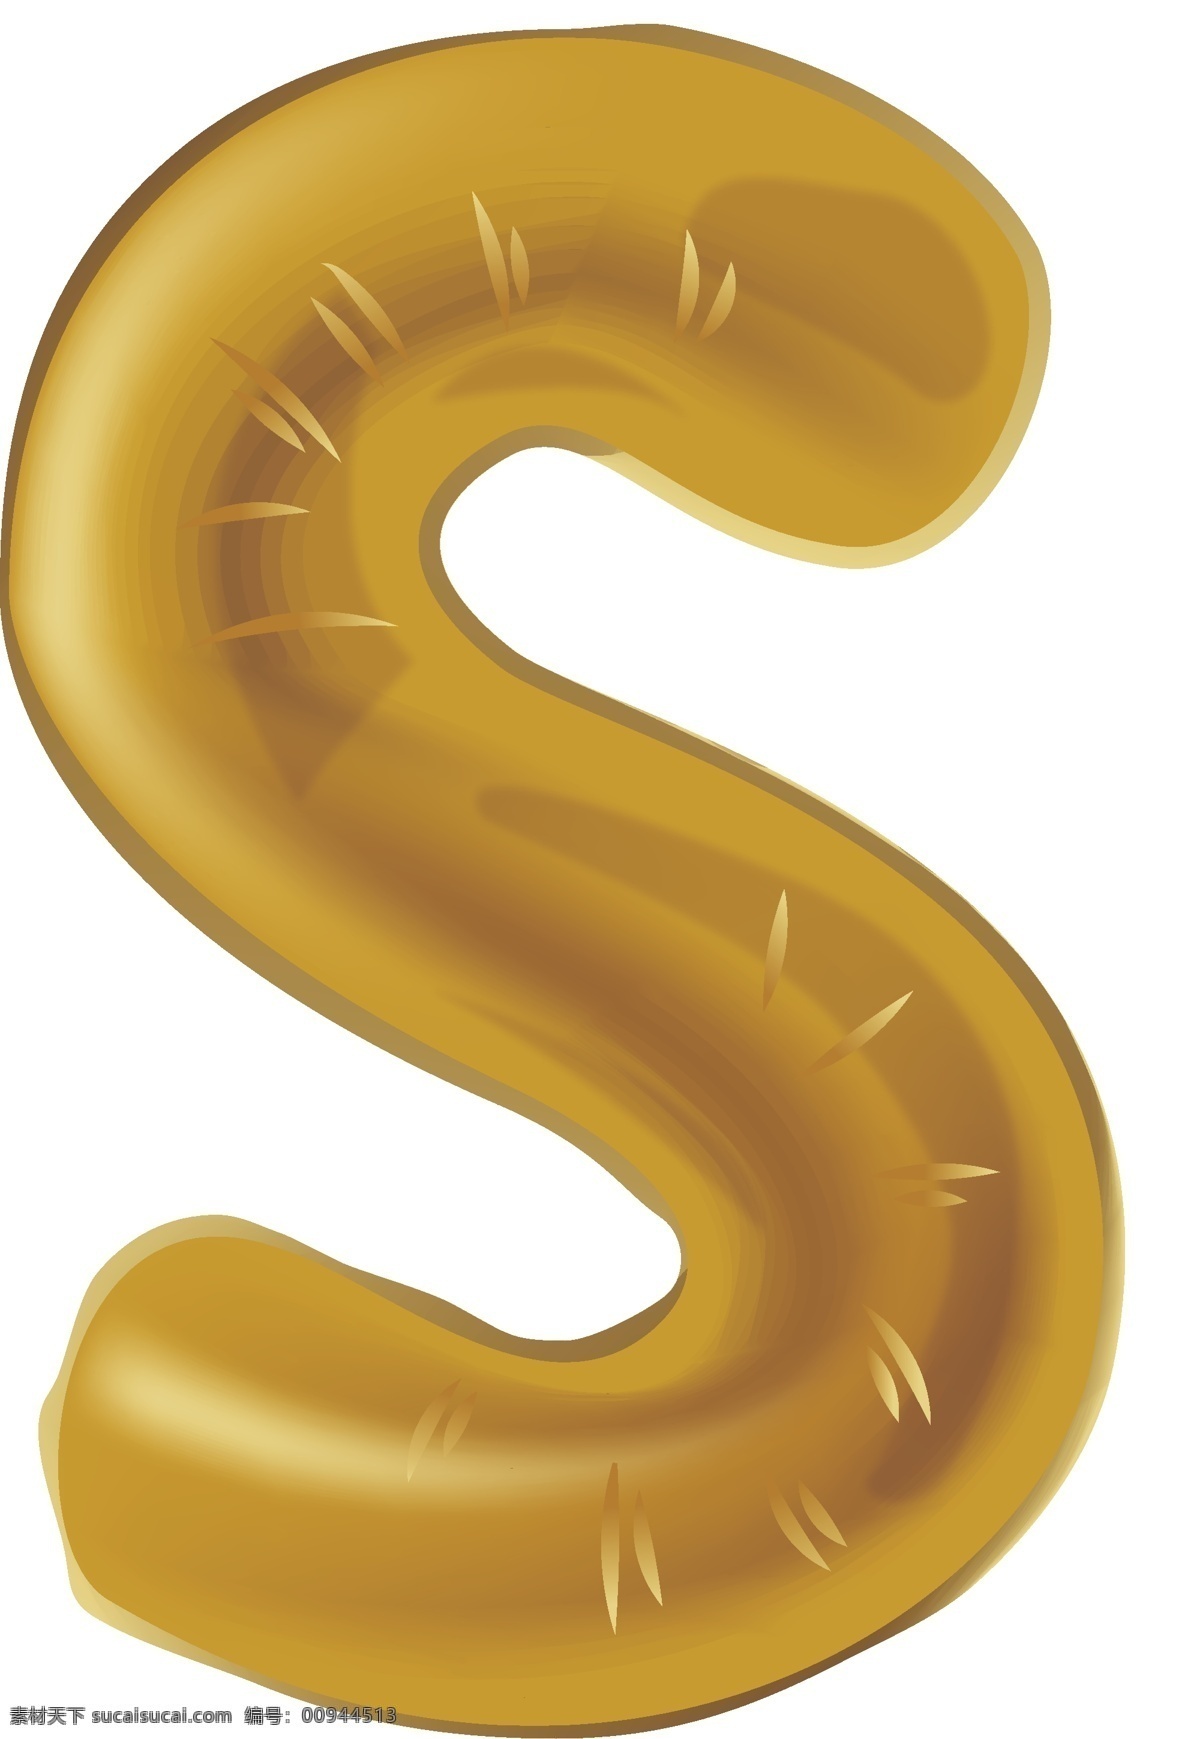 创意 气球 节日 字母 s 金色 金色气球 字母s 创意金色 气球节日